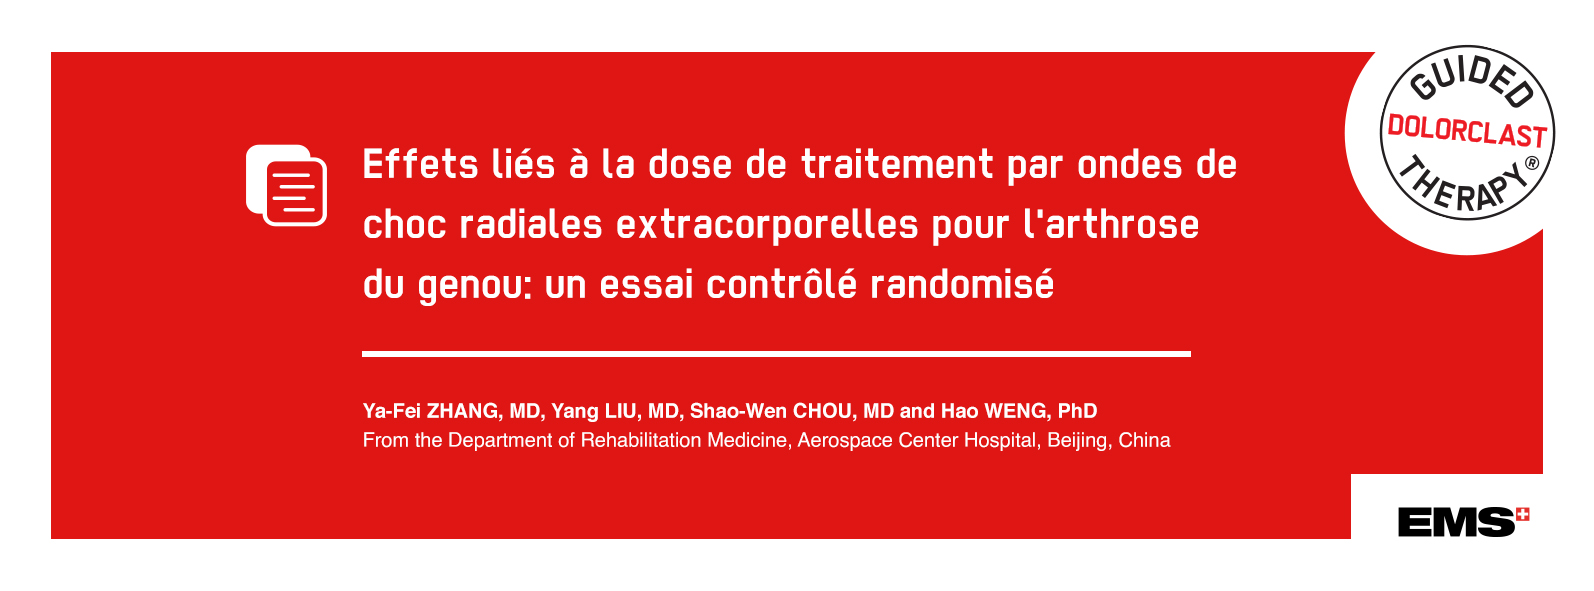 Effets liés à la dose de traitement par ondes de choc radiales extracorporelles pour l'arthrose du genou bannière